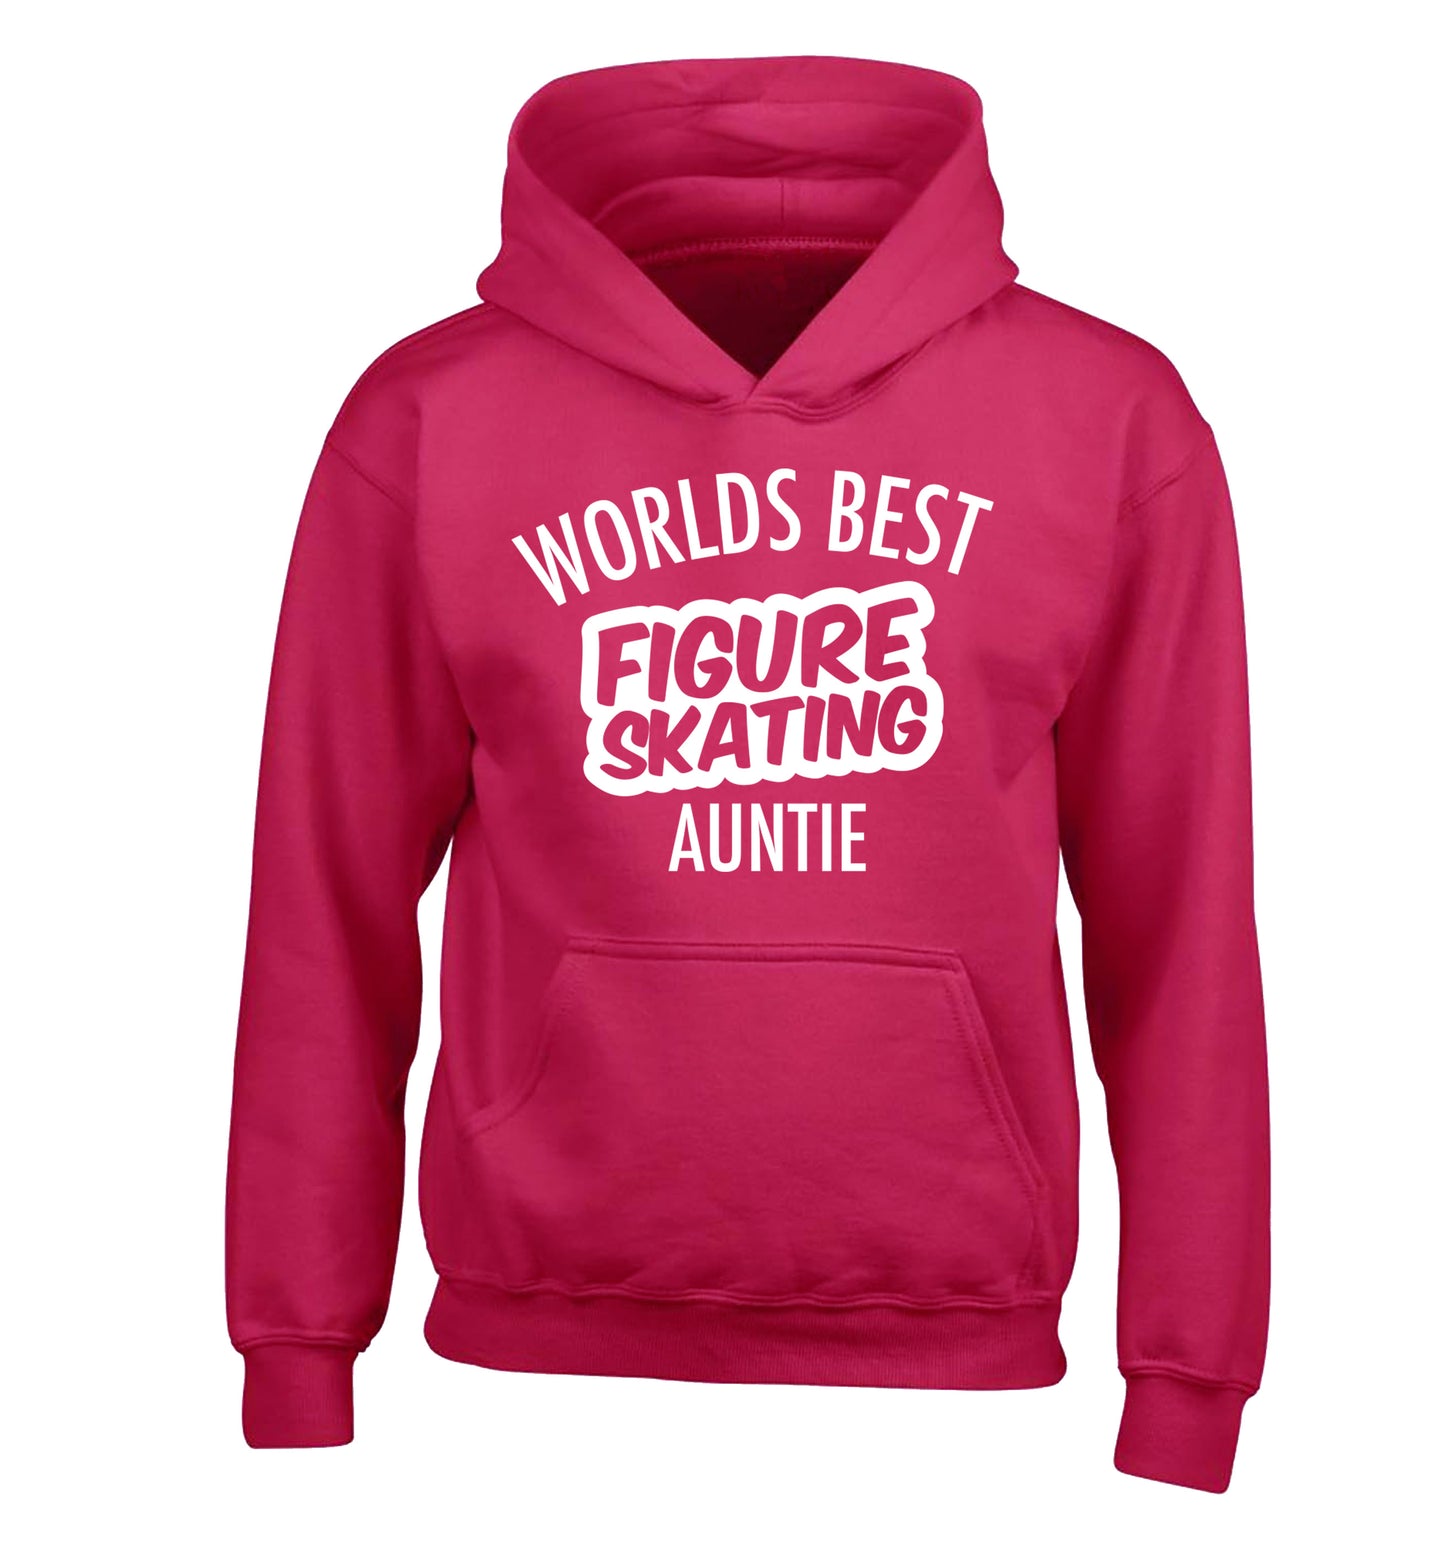 Worlds best figure skating auntie children's pink hoodie 12-14 Years